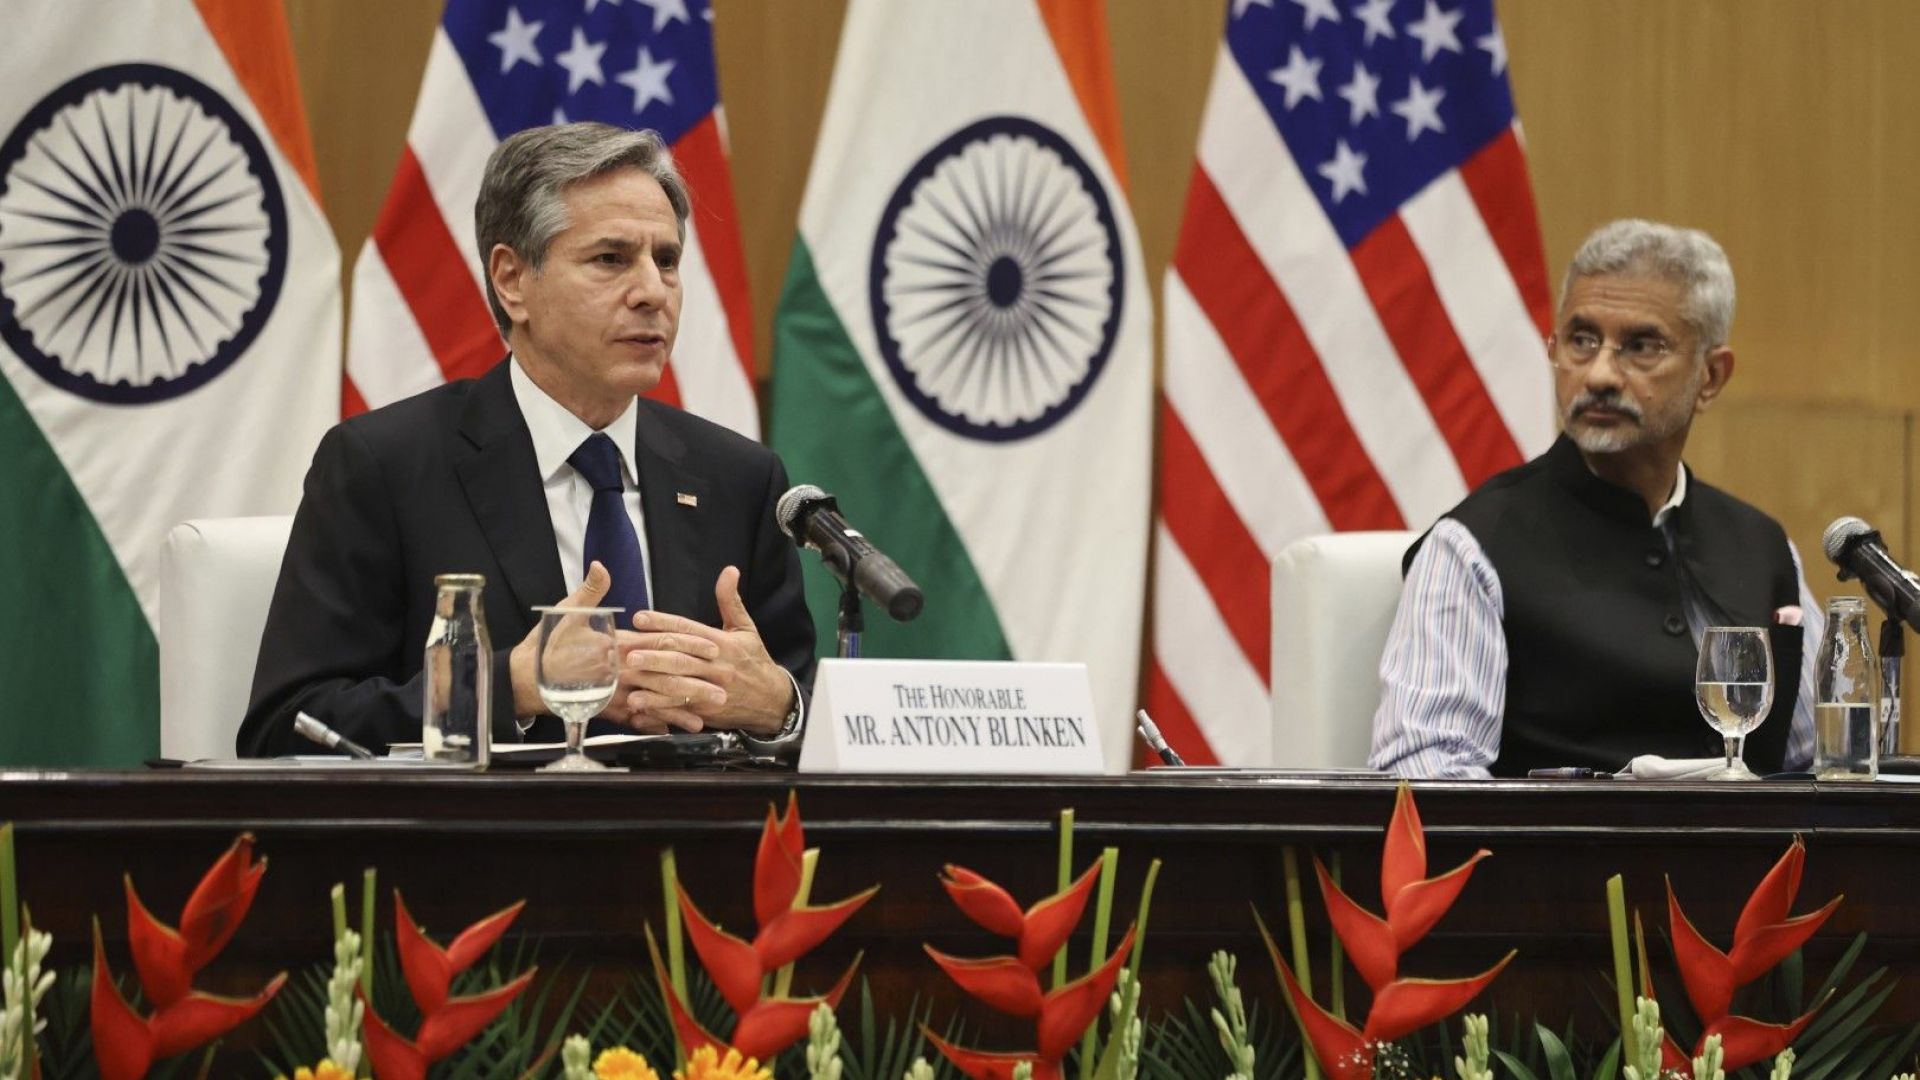 Държавният секретар на САЩ Антъни Блинкен говори по време на съвместна пресконференция с индийския външен министър Субраманьям Джайшанкар в Делхи, Индия, сряда, 28 юли 2021 г. 